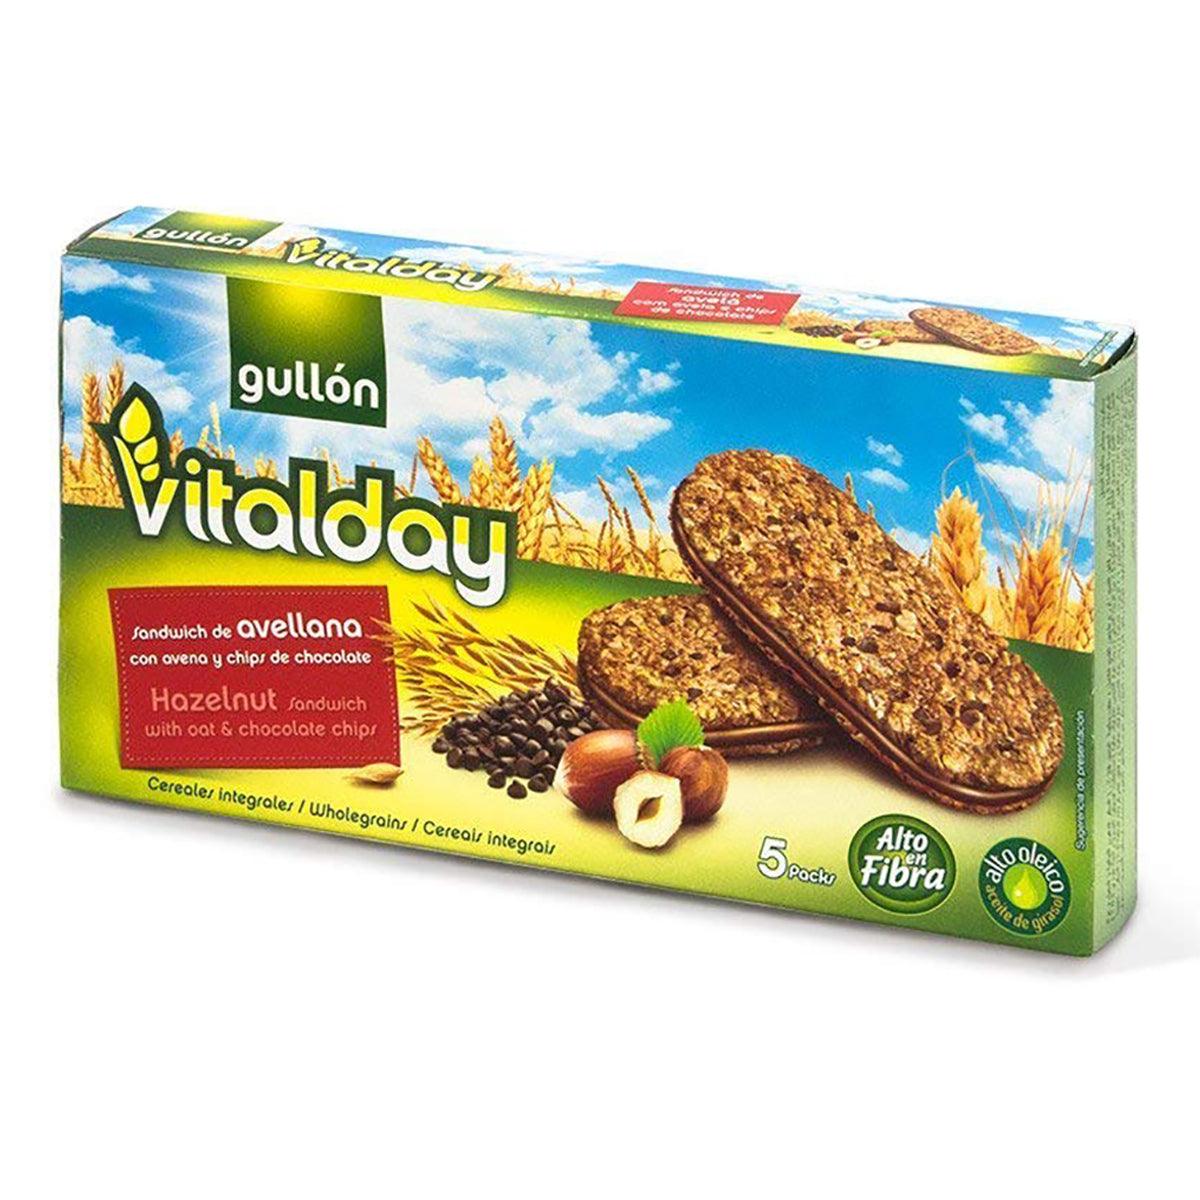 Gullon Vitalday Hazenut Crnch Bis Foods Seabra – 7.76oz Online